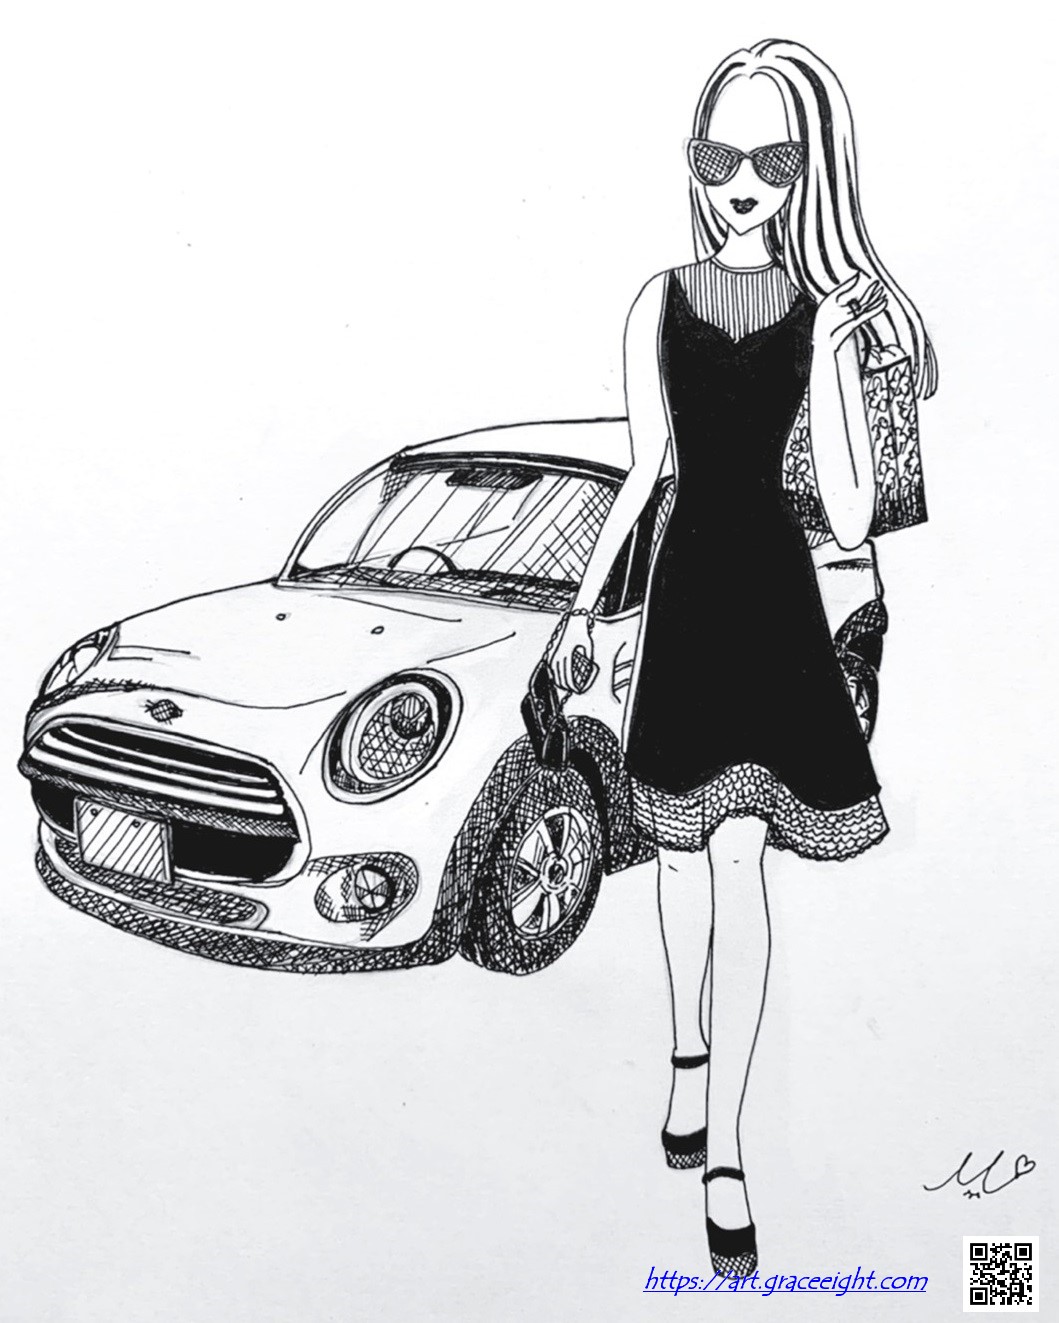 Miジンコさんの手書きイラスト おしゃれな女性と可愛い車 デザインとアート